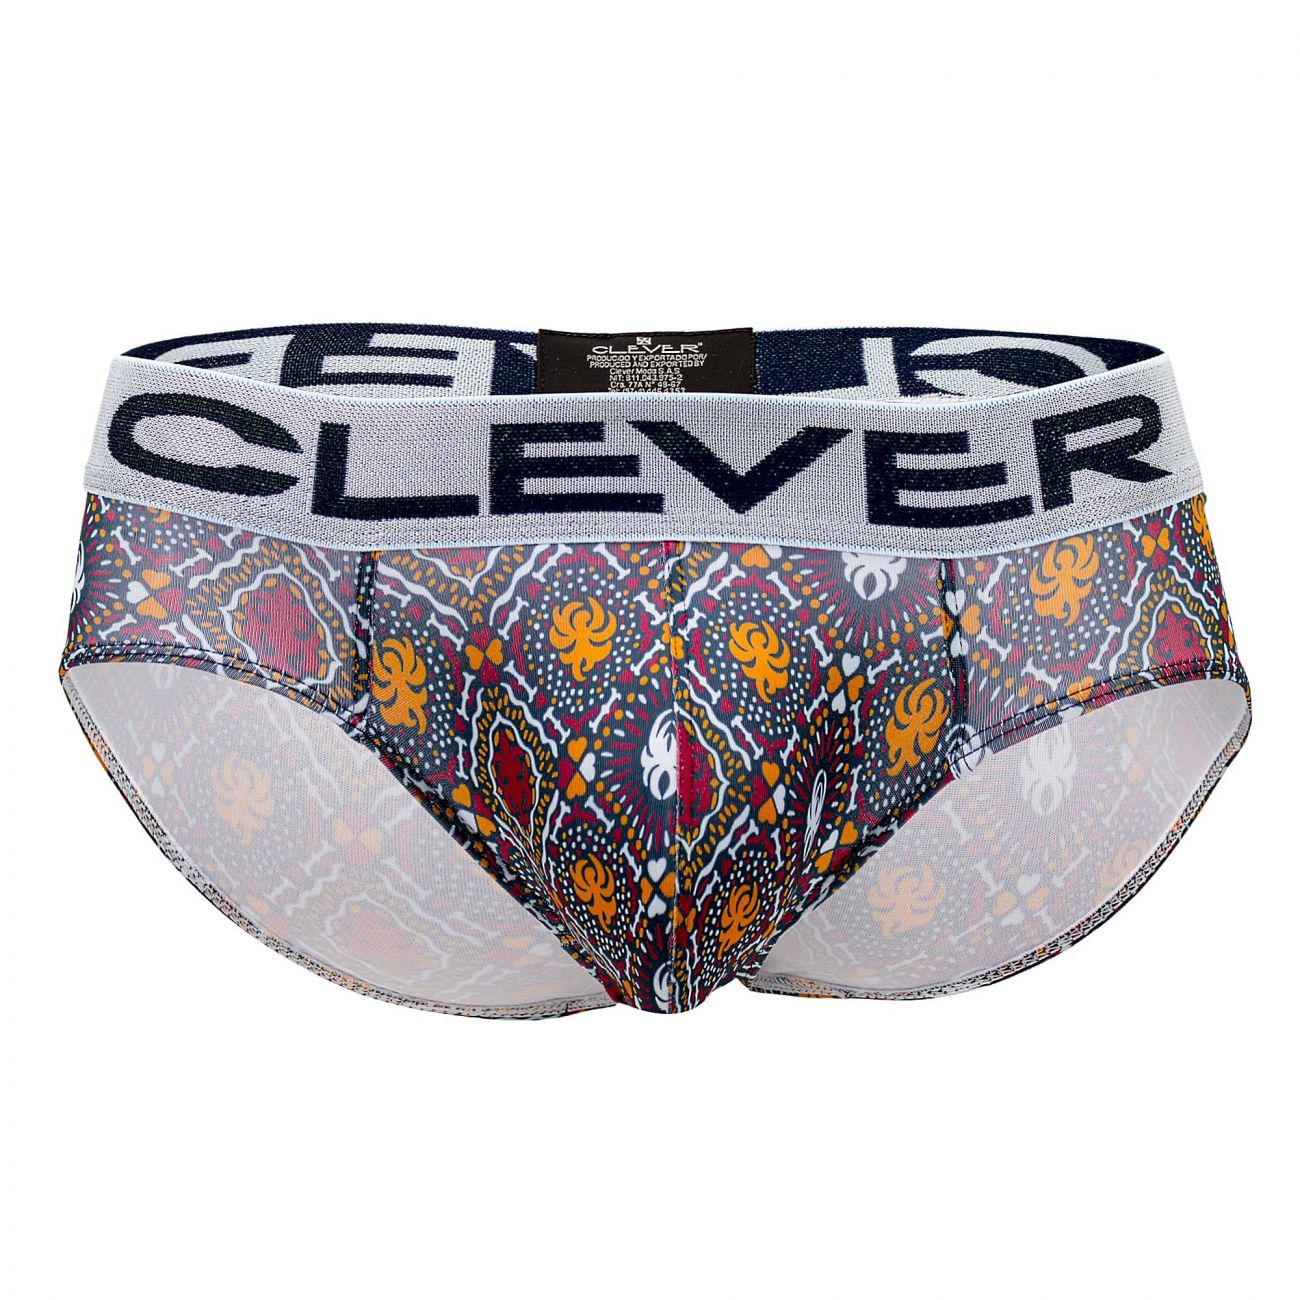 Clever Underwear Tradition Latin Briefs | Shop MensUnderwear.io